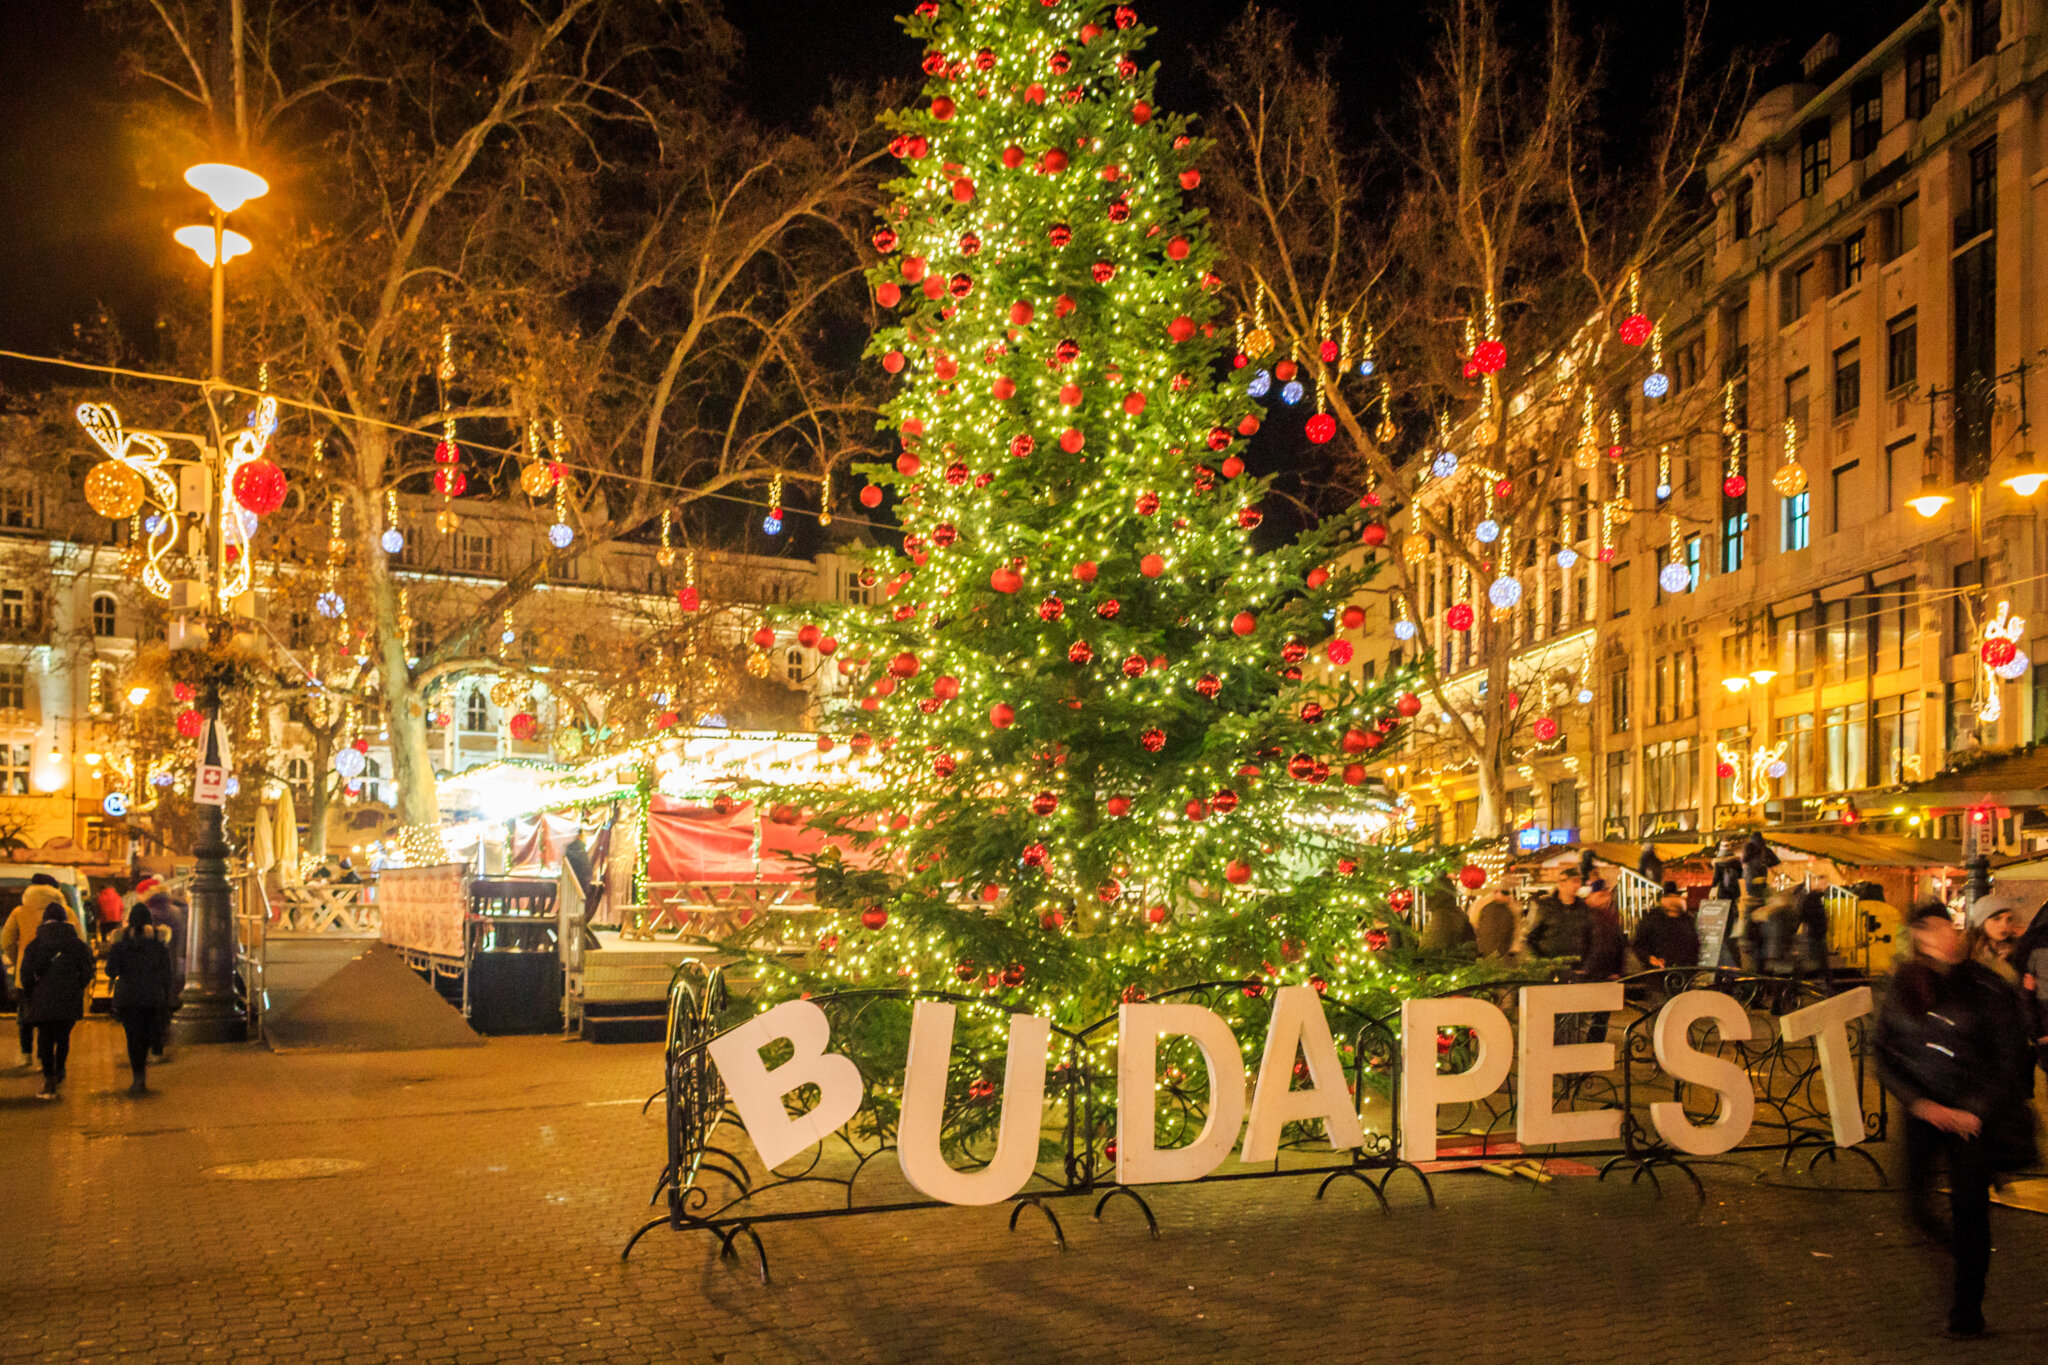 Budapest Christmas Market 2021 | Dates